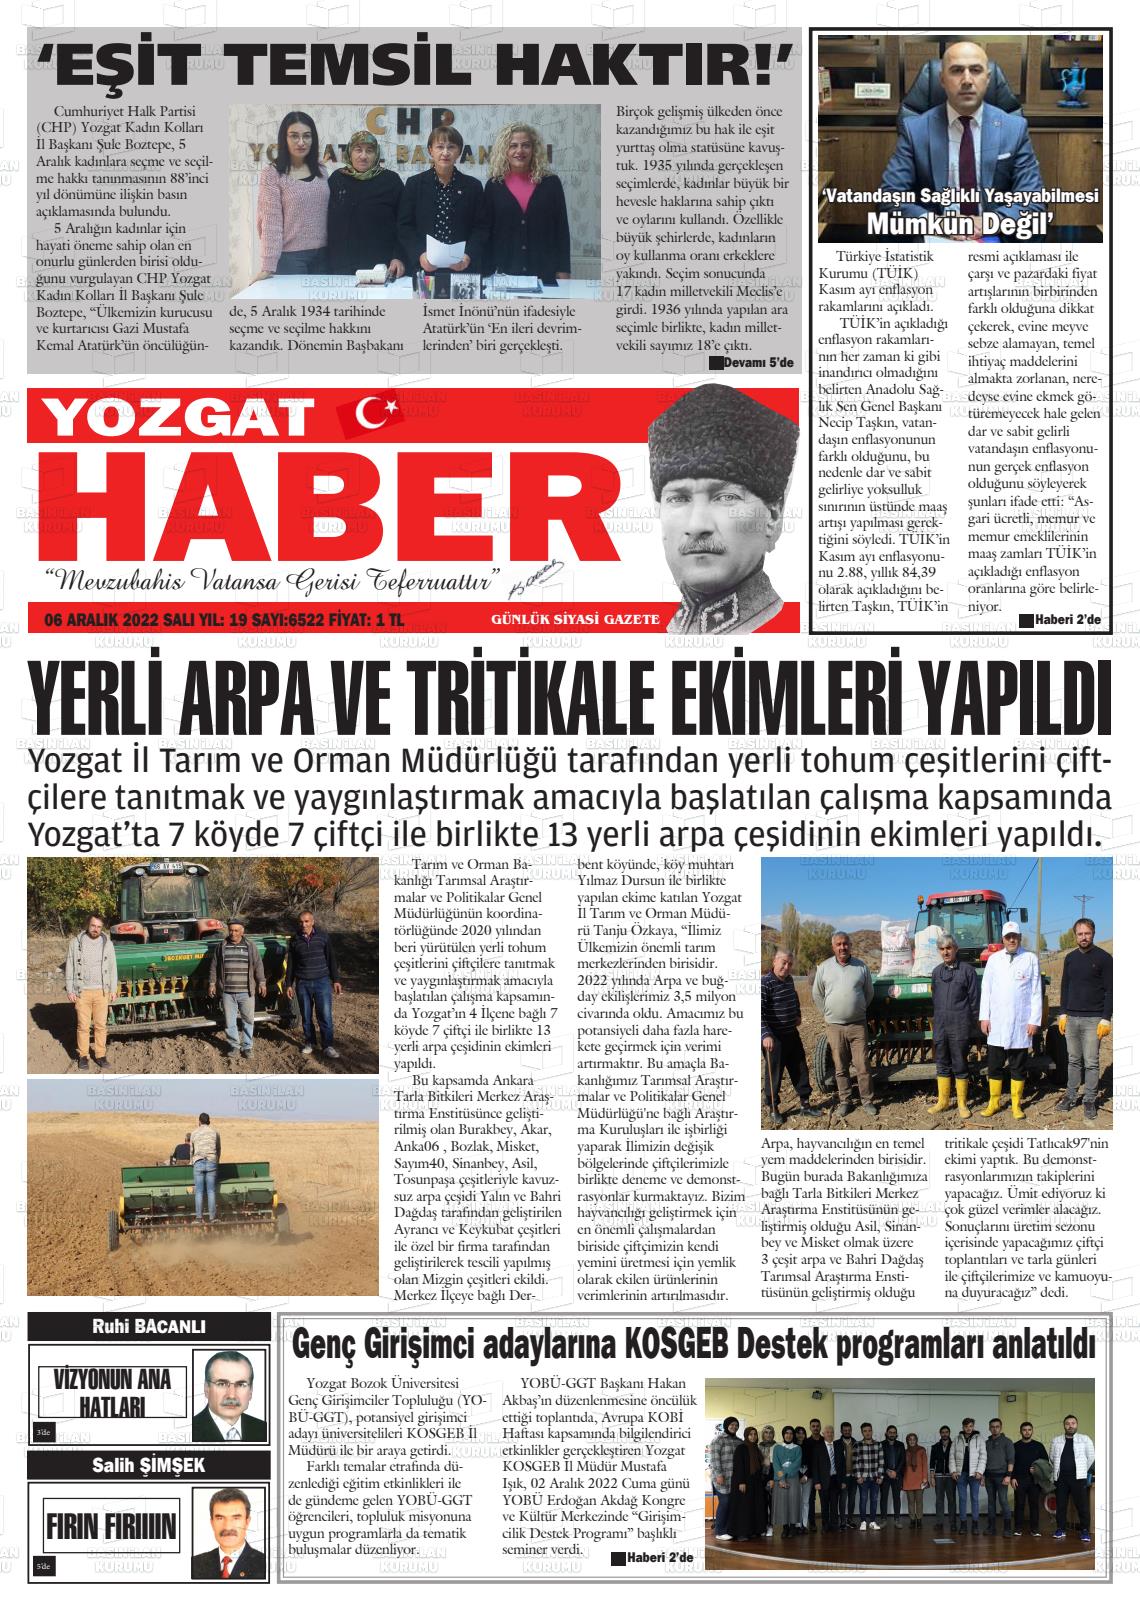 06 Aralık 2022 Yozgat Haber Gazete Manşeti